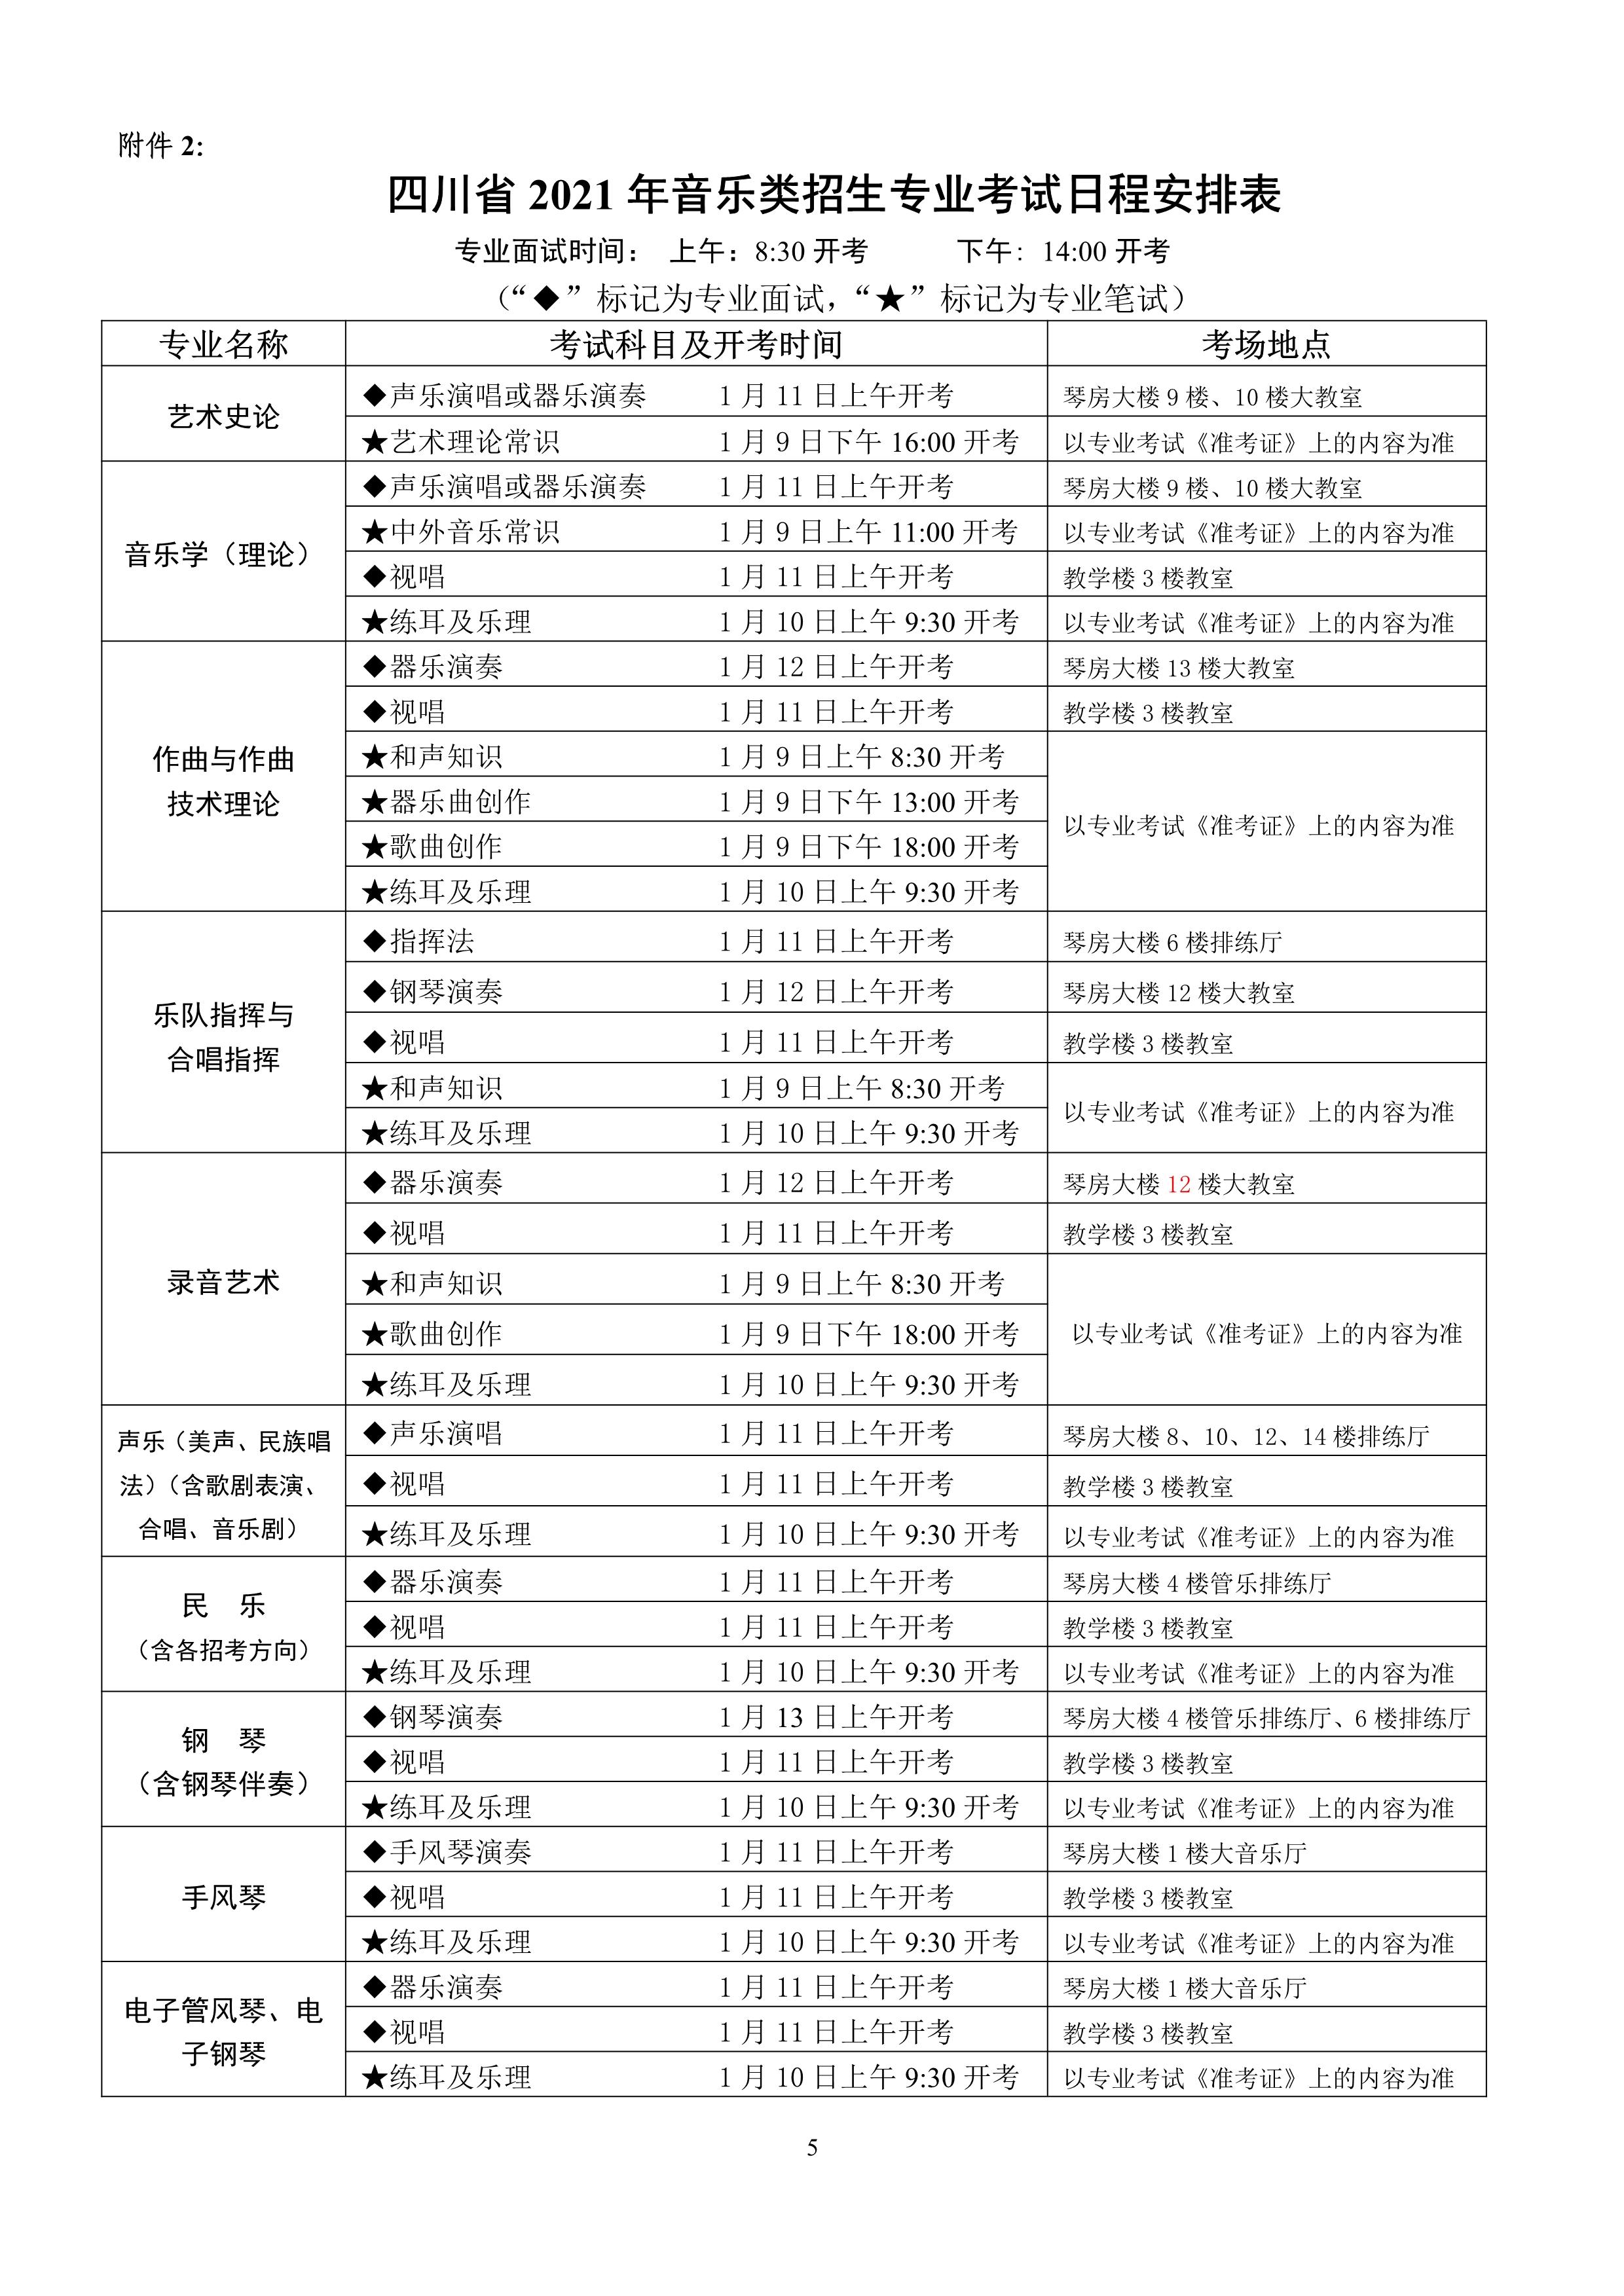 1.四川省2021年普通高校招生音乐类专业考试考生须知_5.jpg